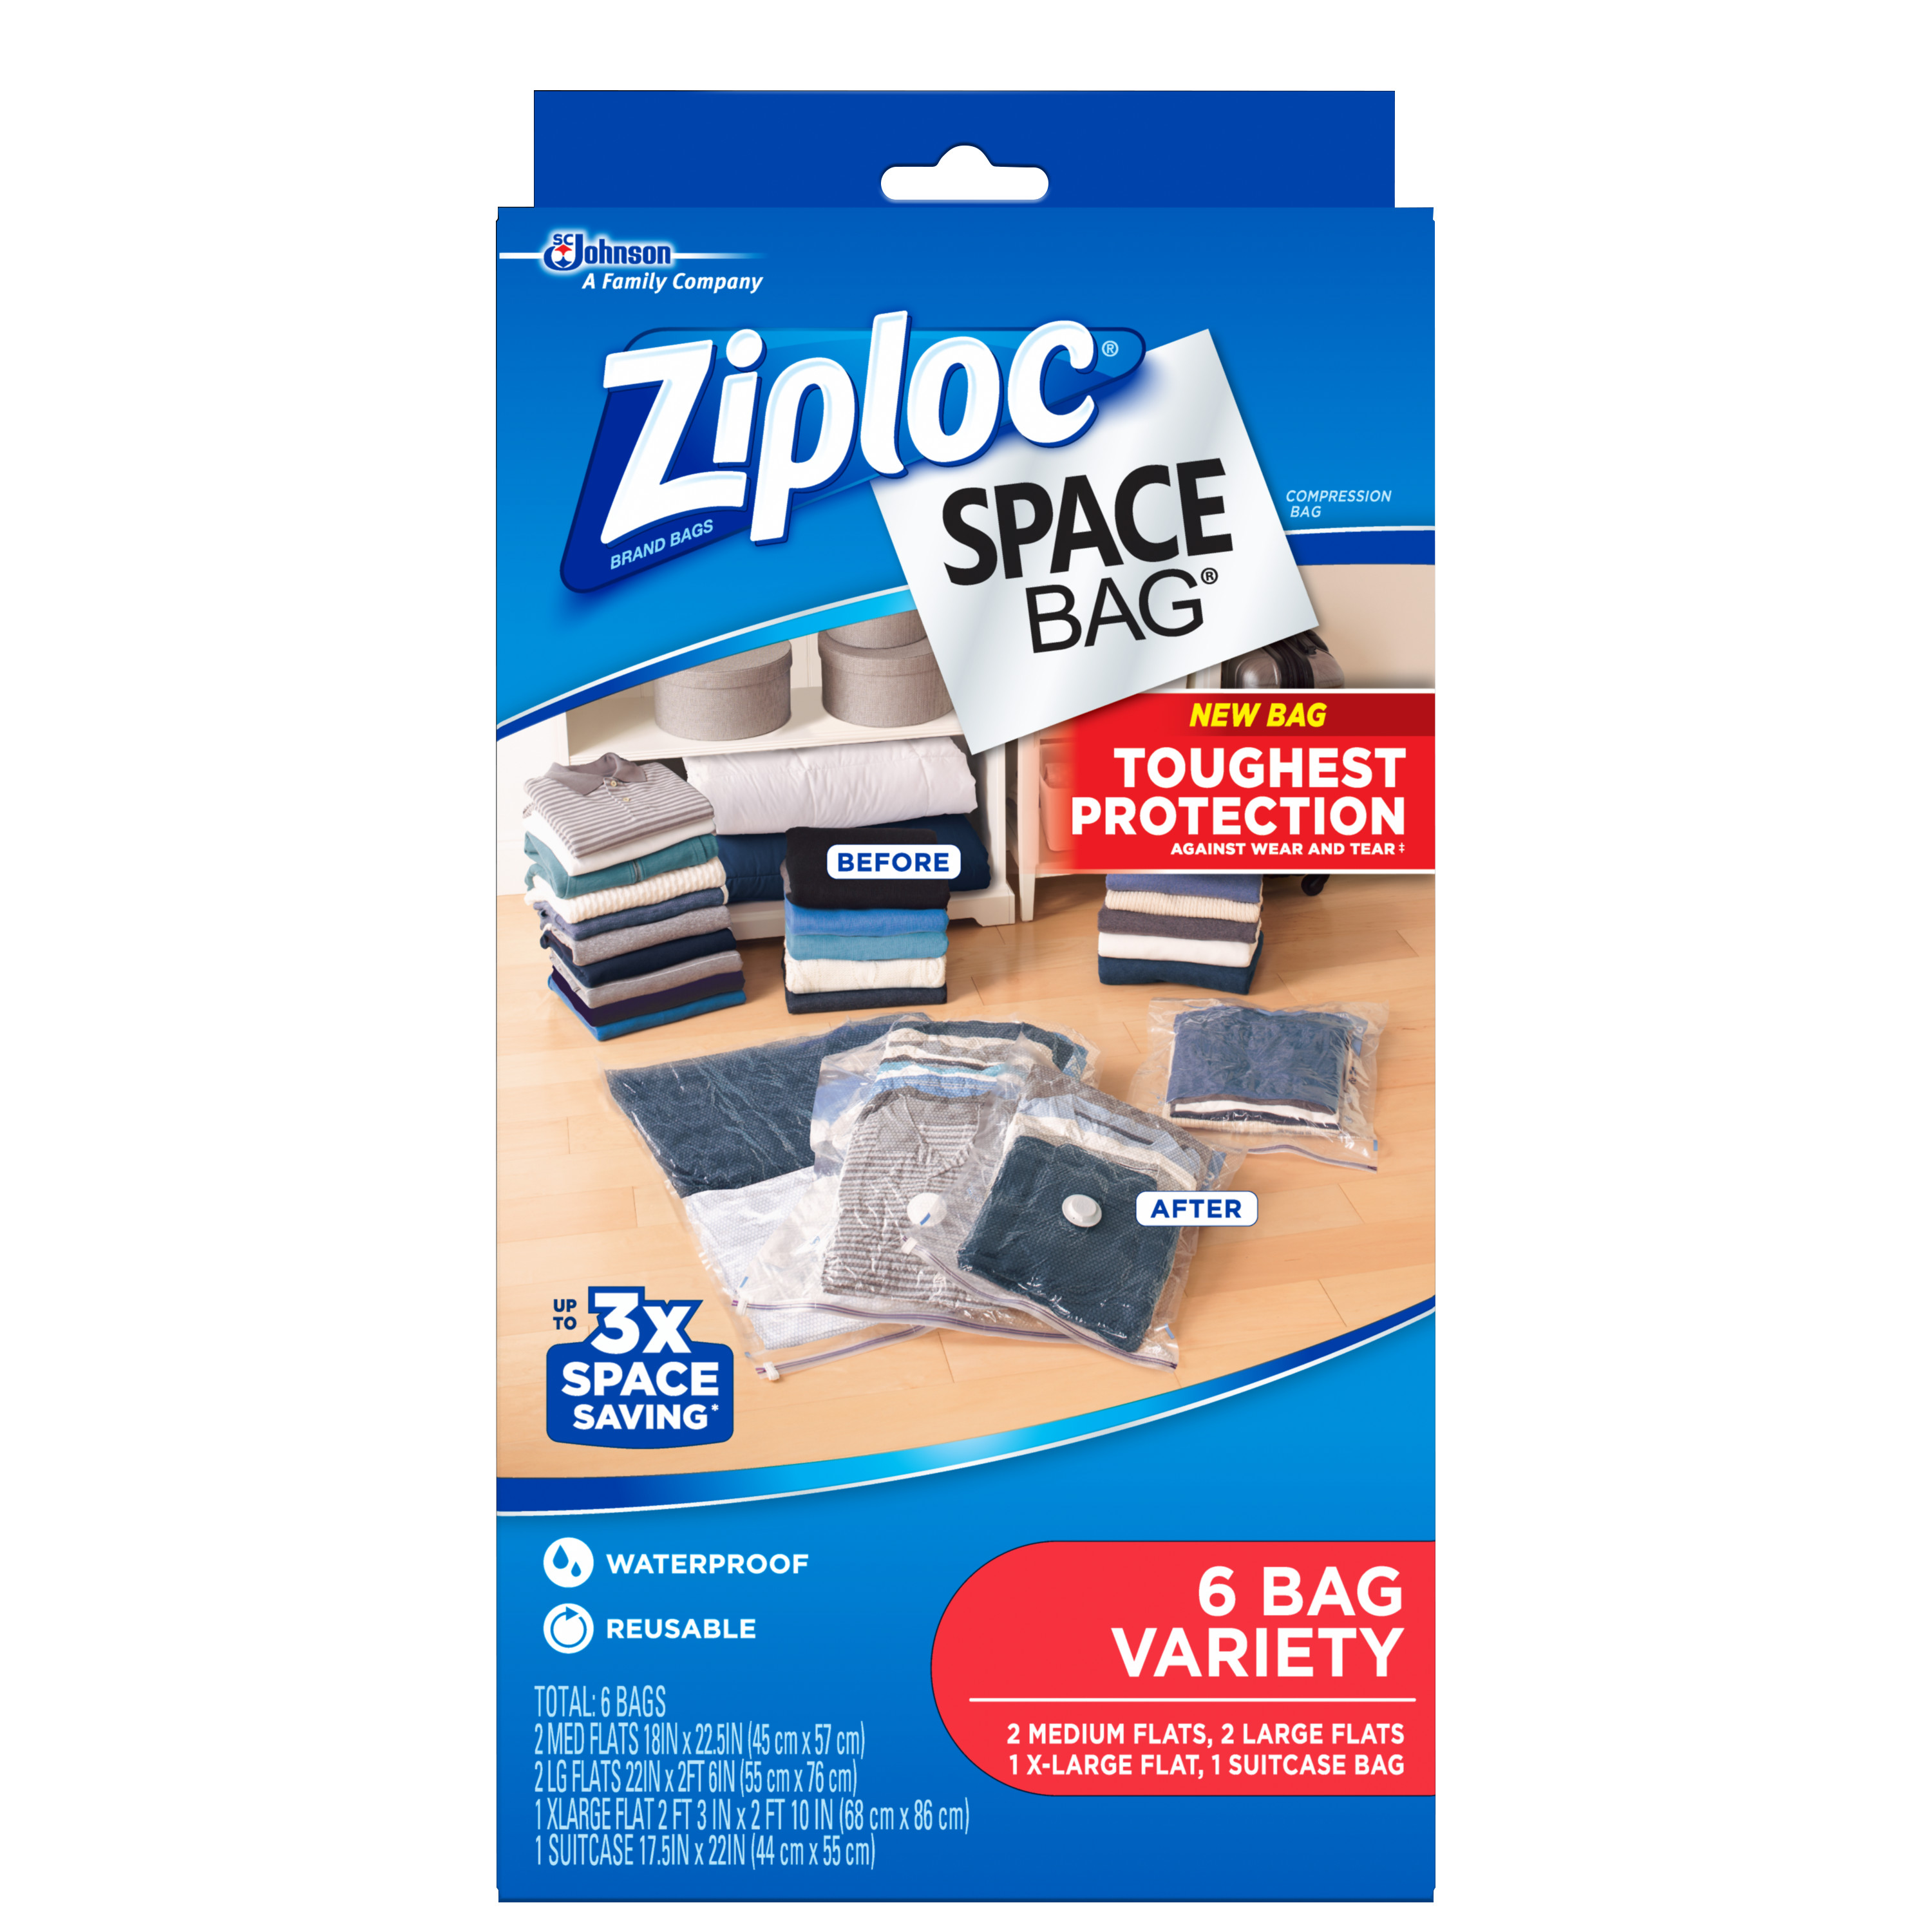 Ziploc Space Bag, Variety, 6 bags - image 1 of 5